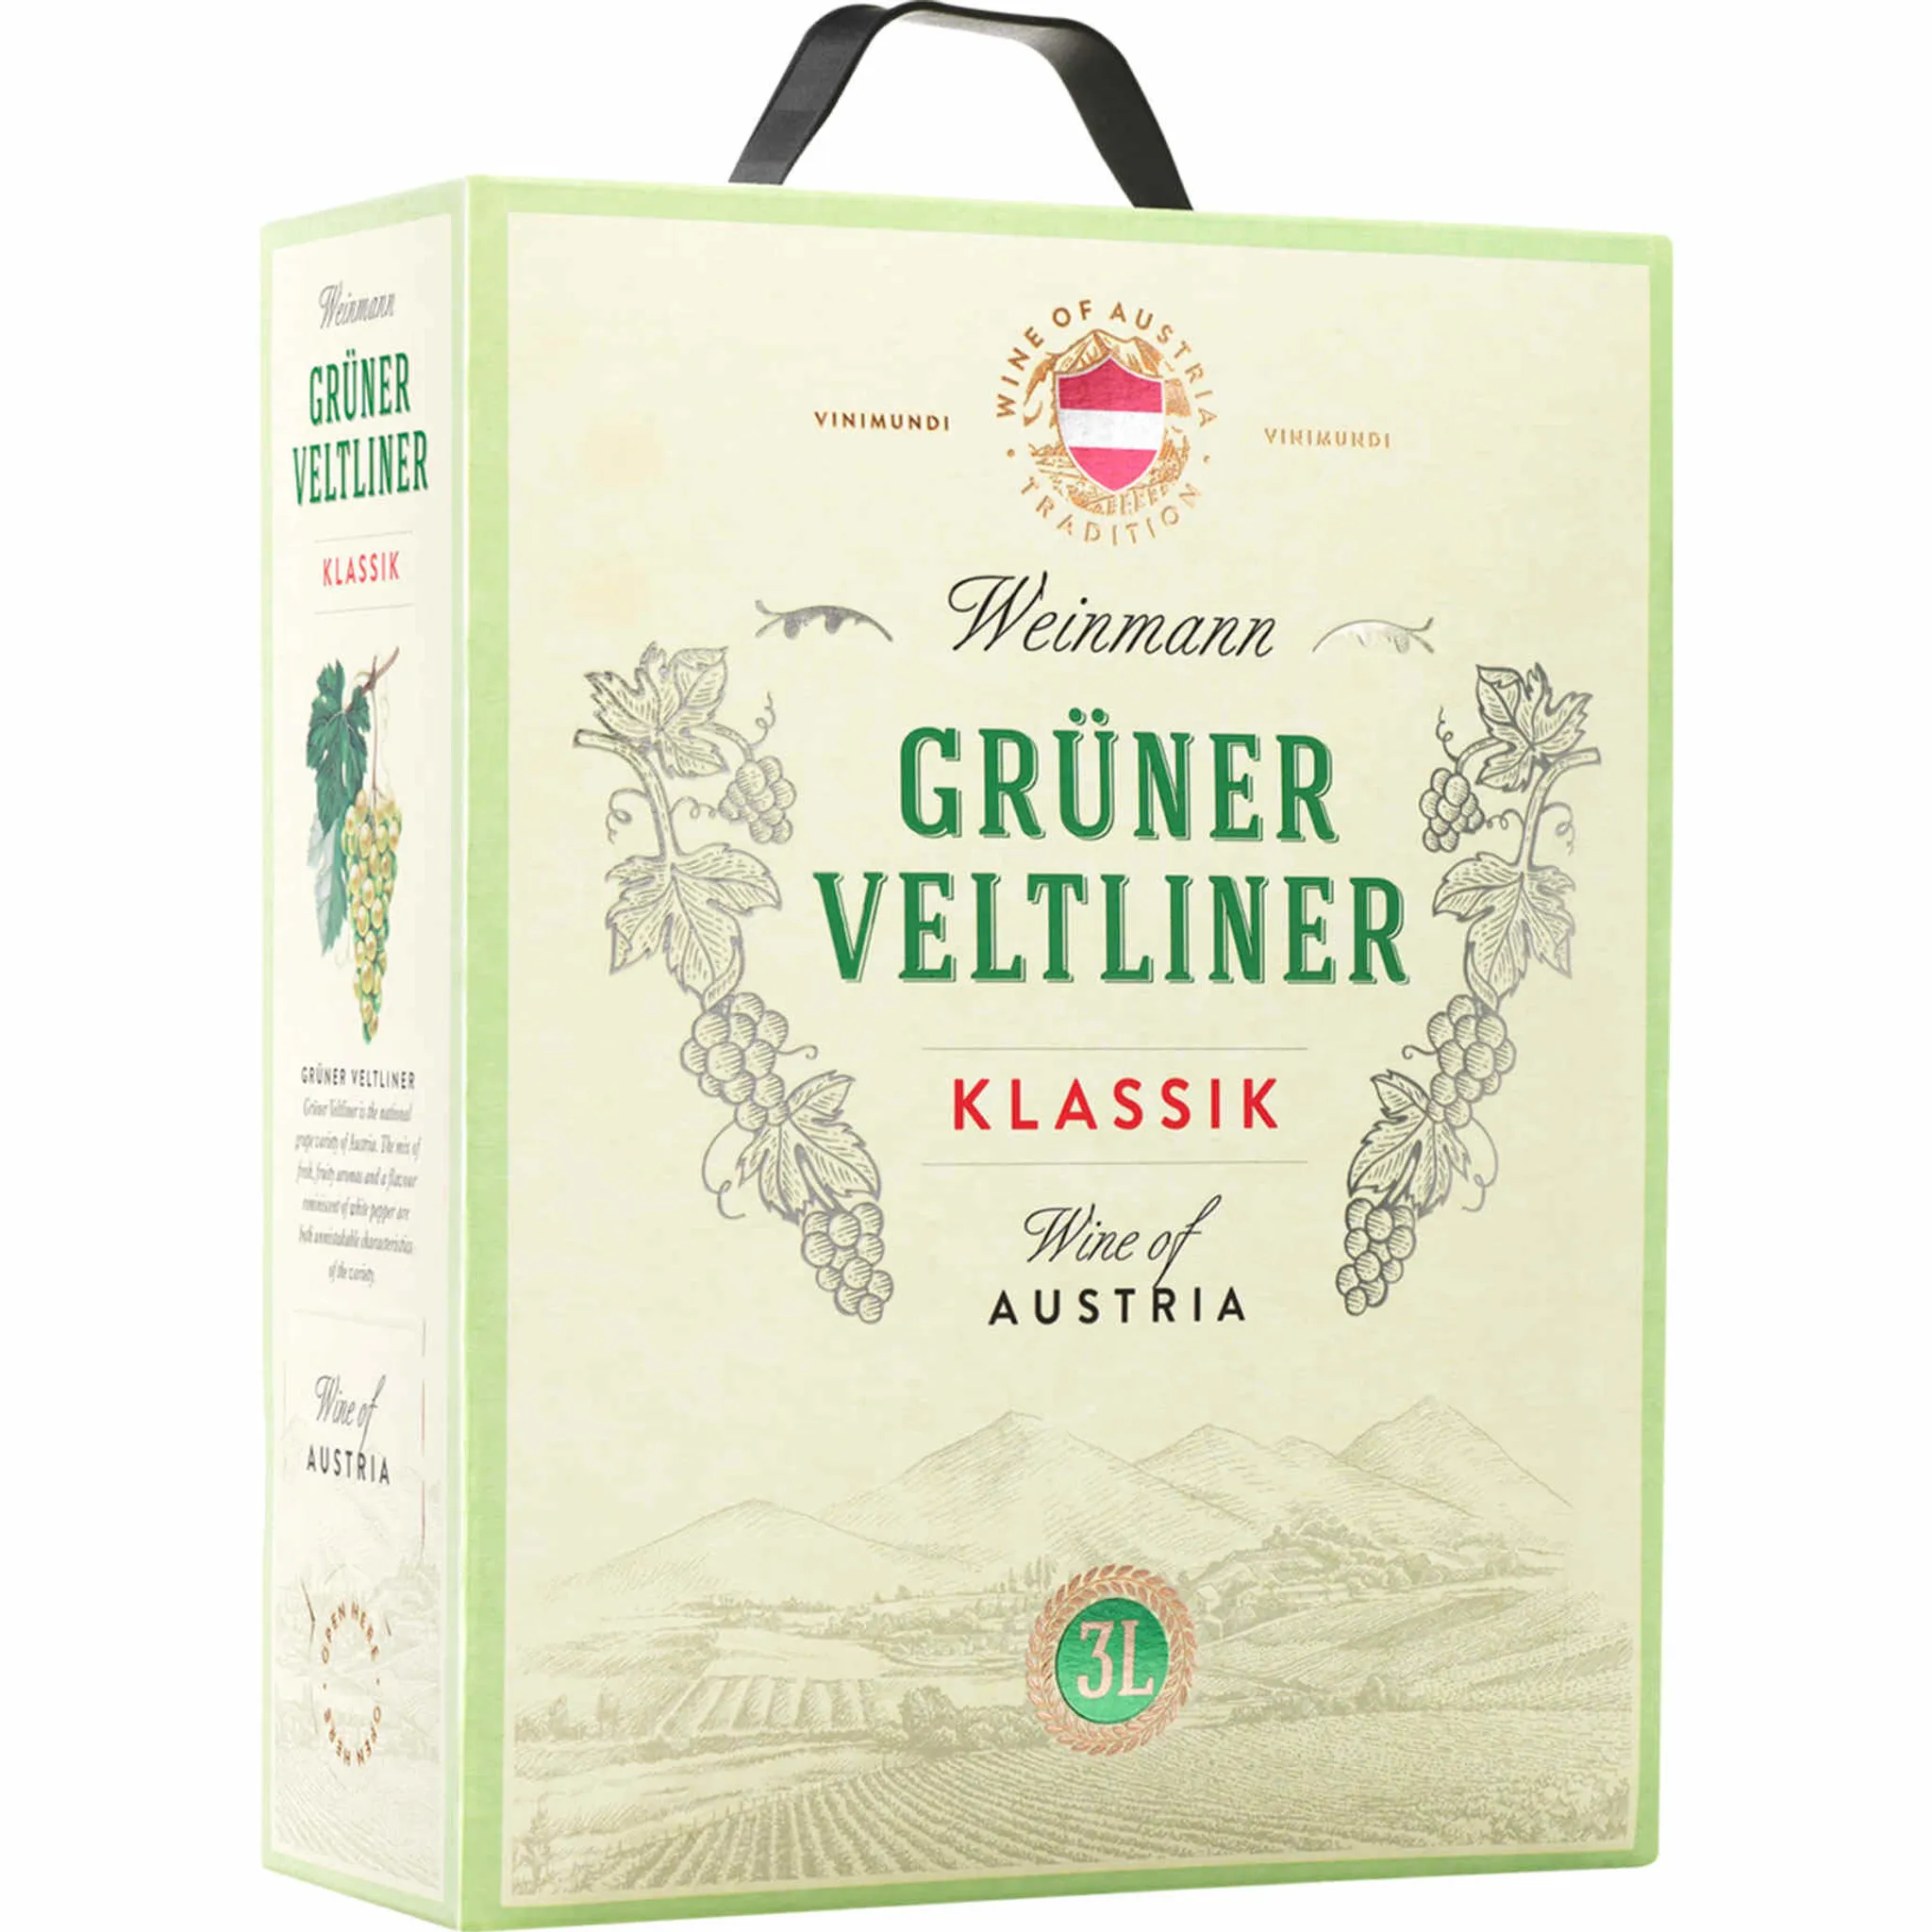 Box Bag Velentiner in 3,0l Weinmann Grüner